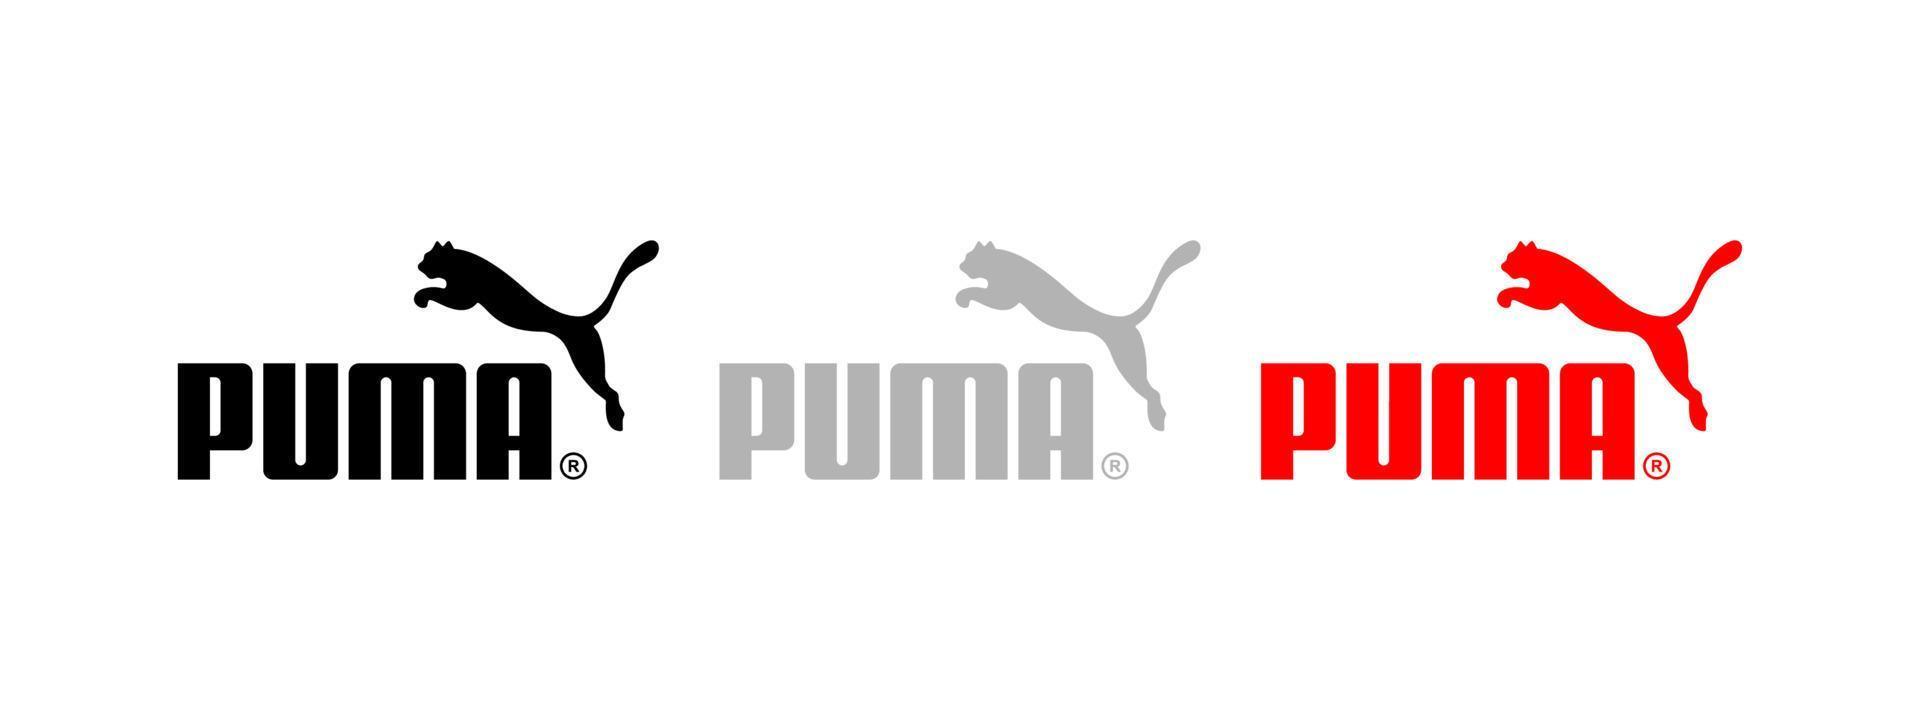 puma logo vector, puma icono gratis vector